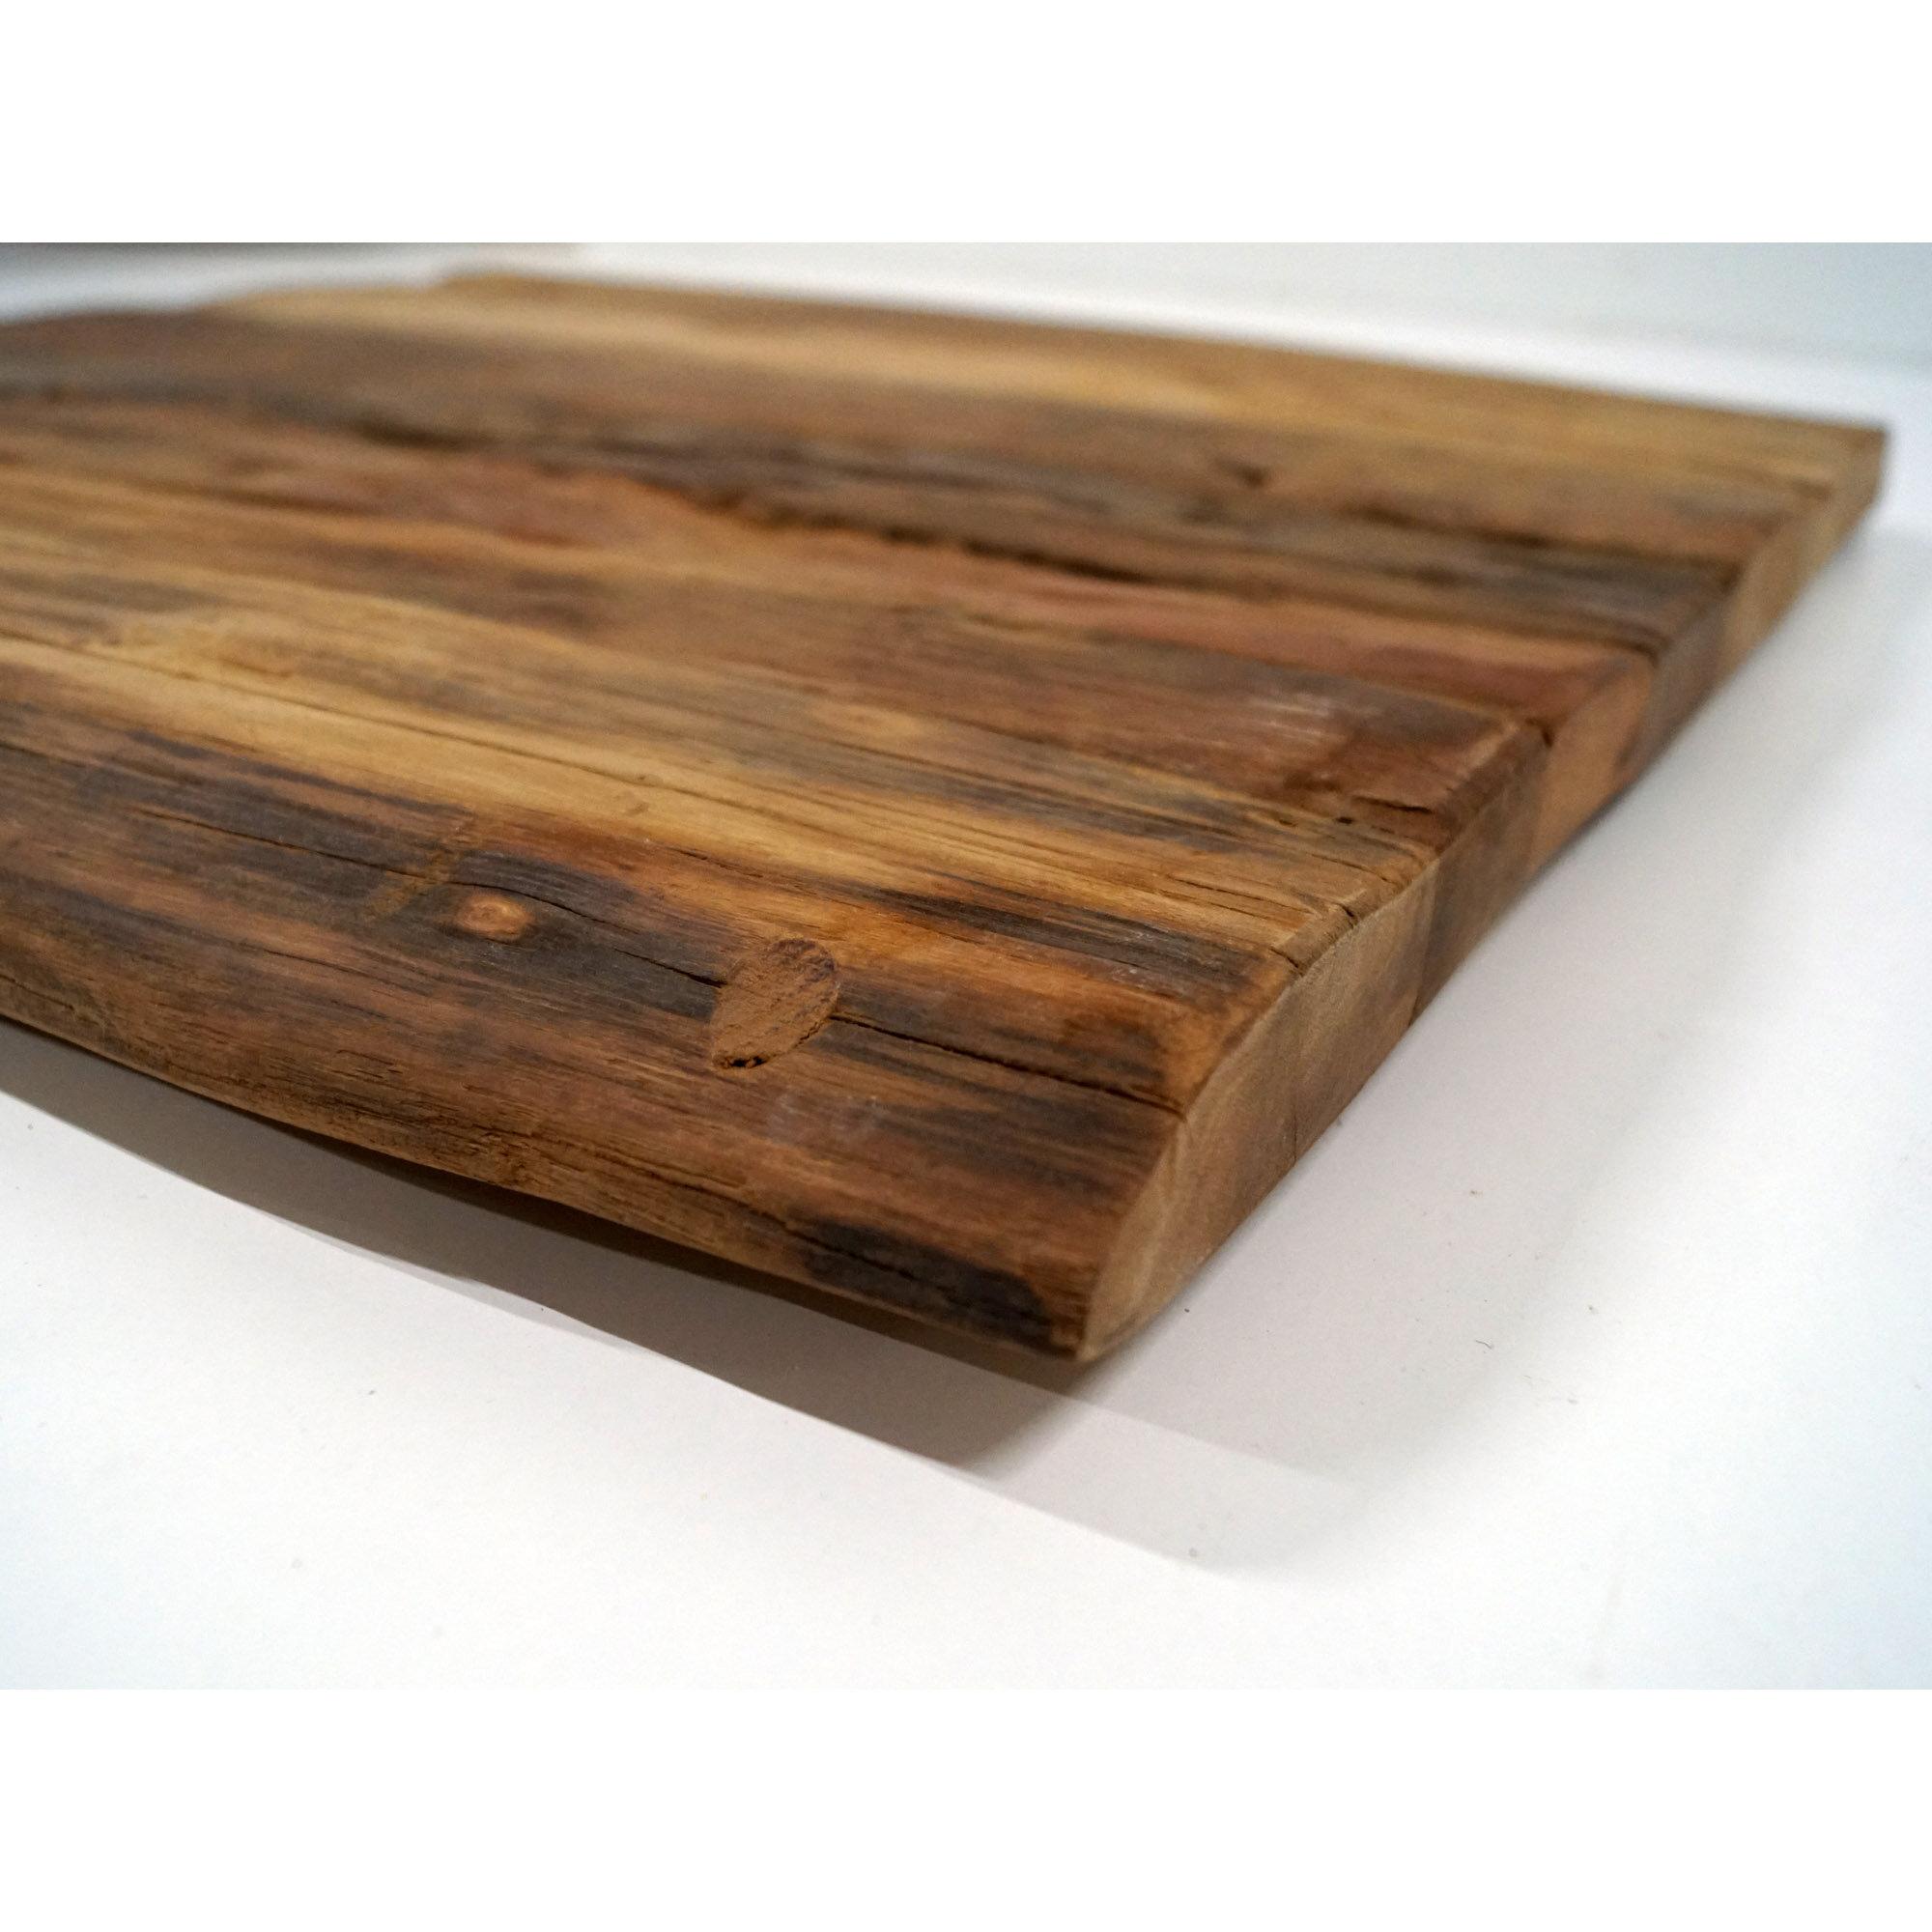  Bullock bordplade i rustikt træ - kvadratisk fra Trademark Living i Genbrugstræ (Varenr: SG1922)